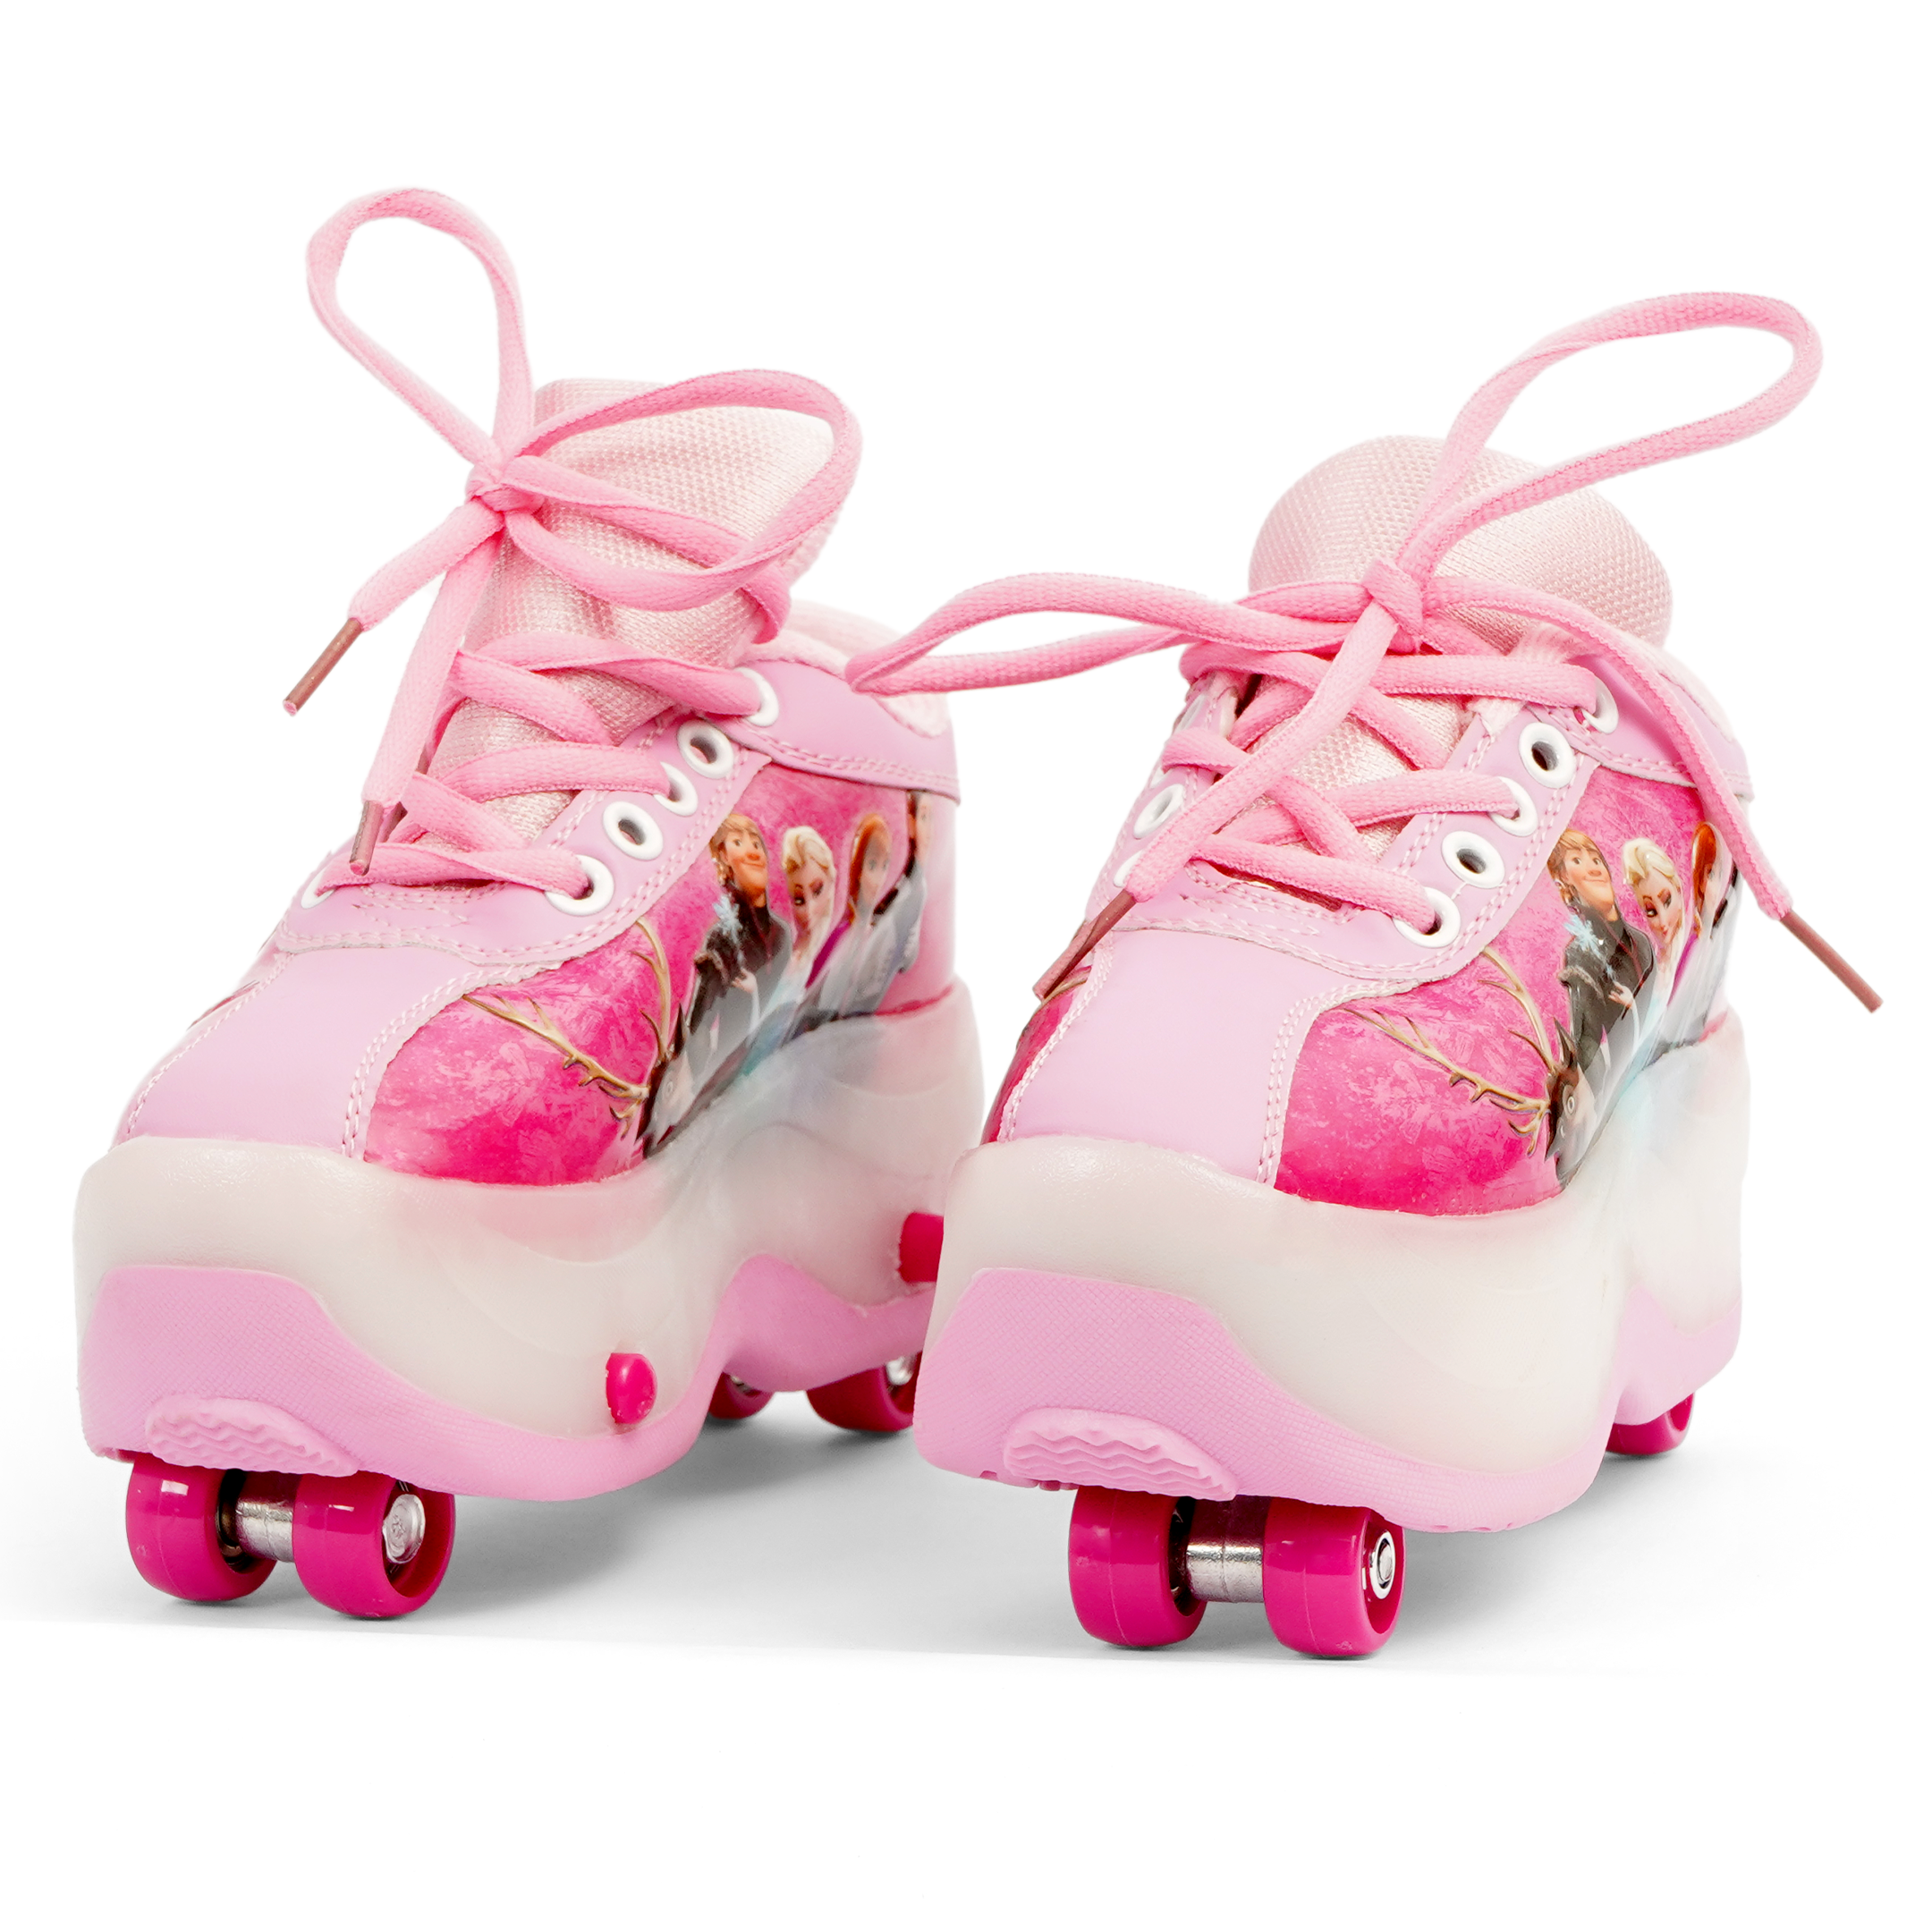 Roller Skate Shoes For Kids - Pink